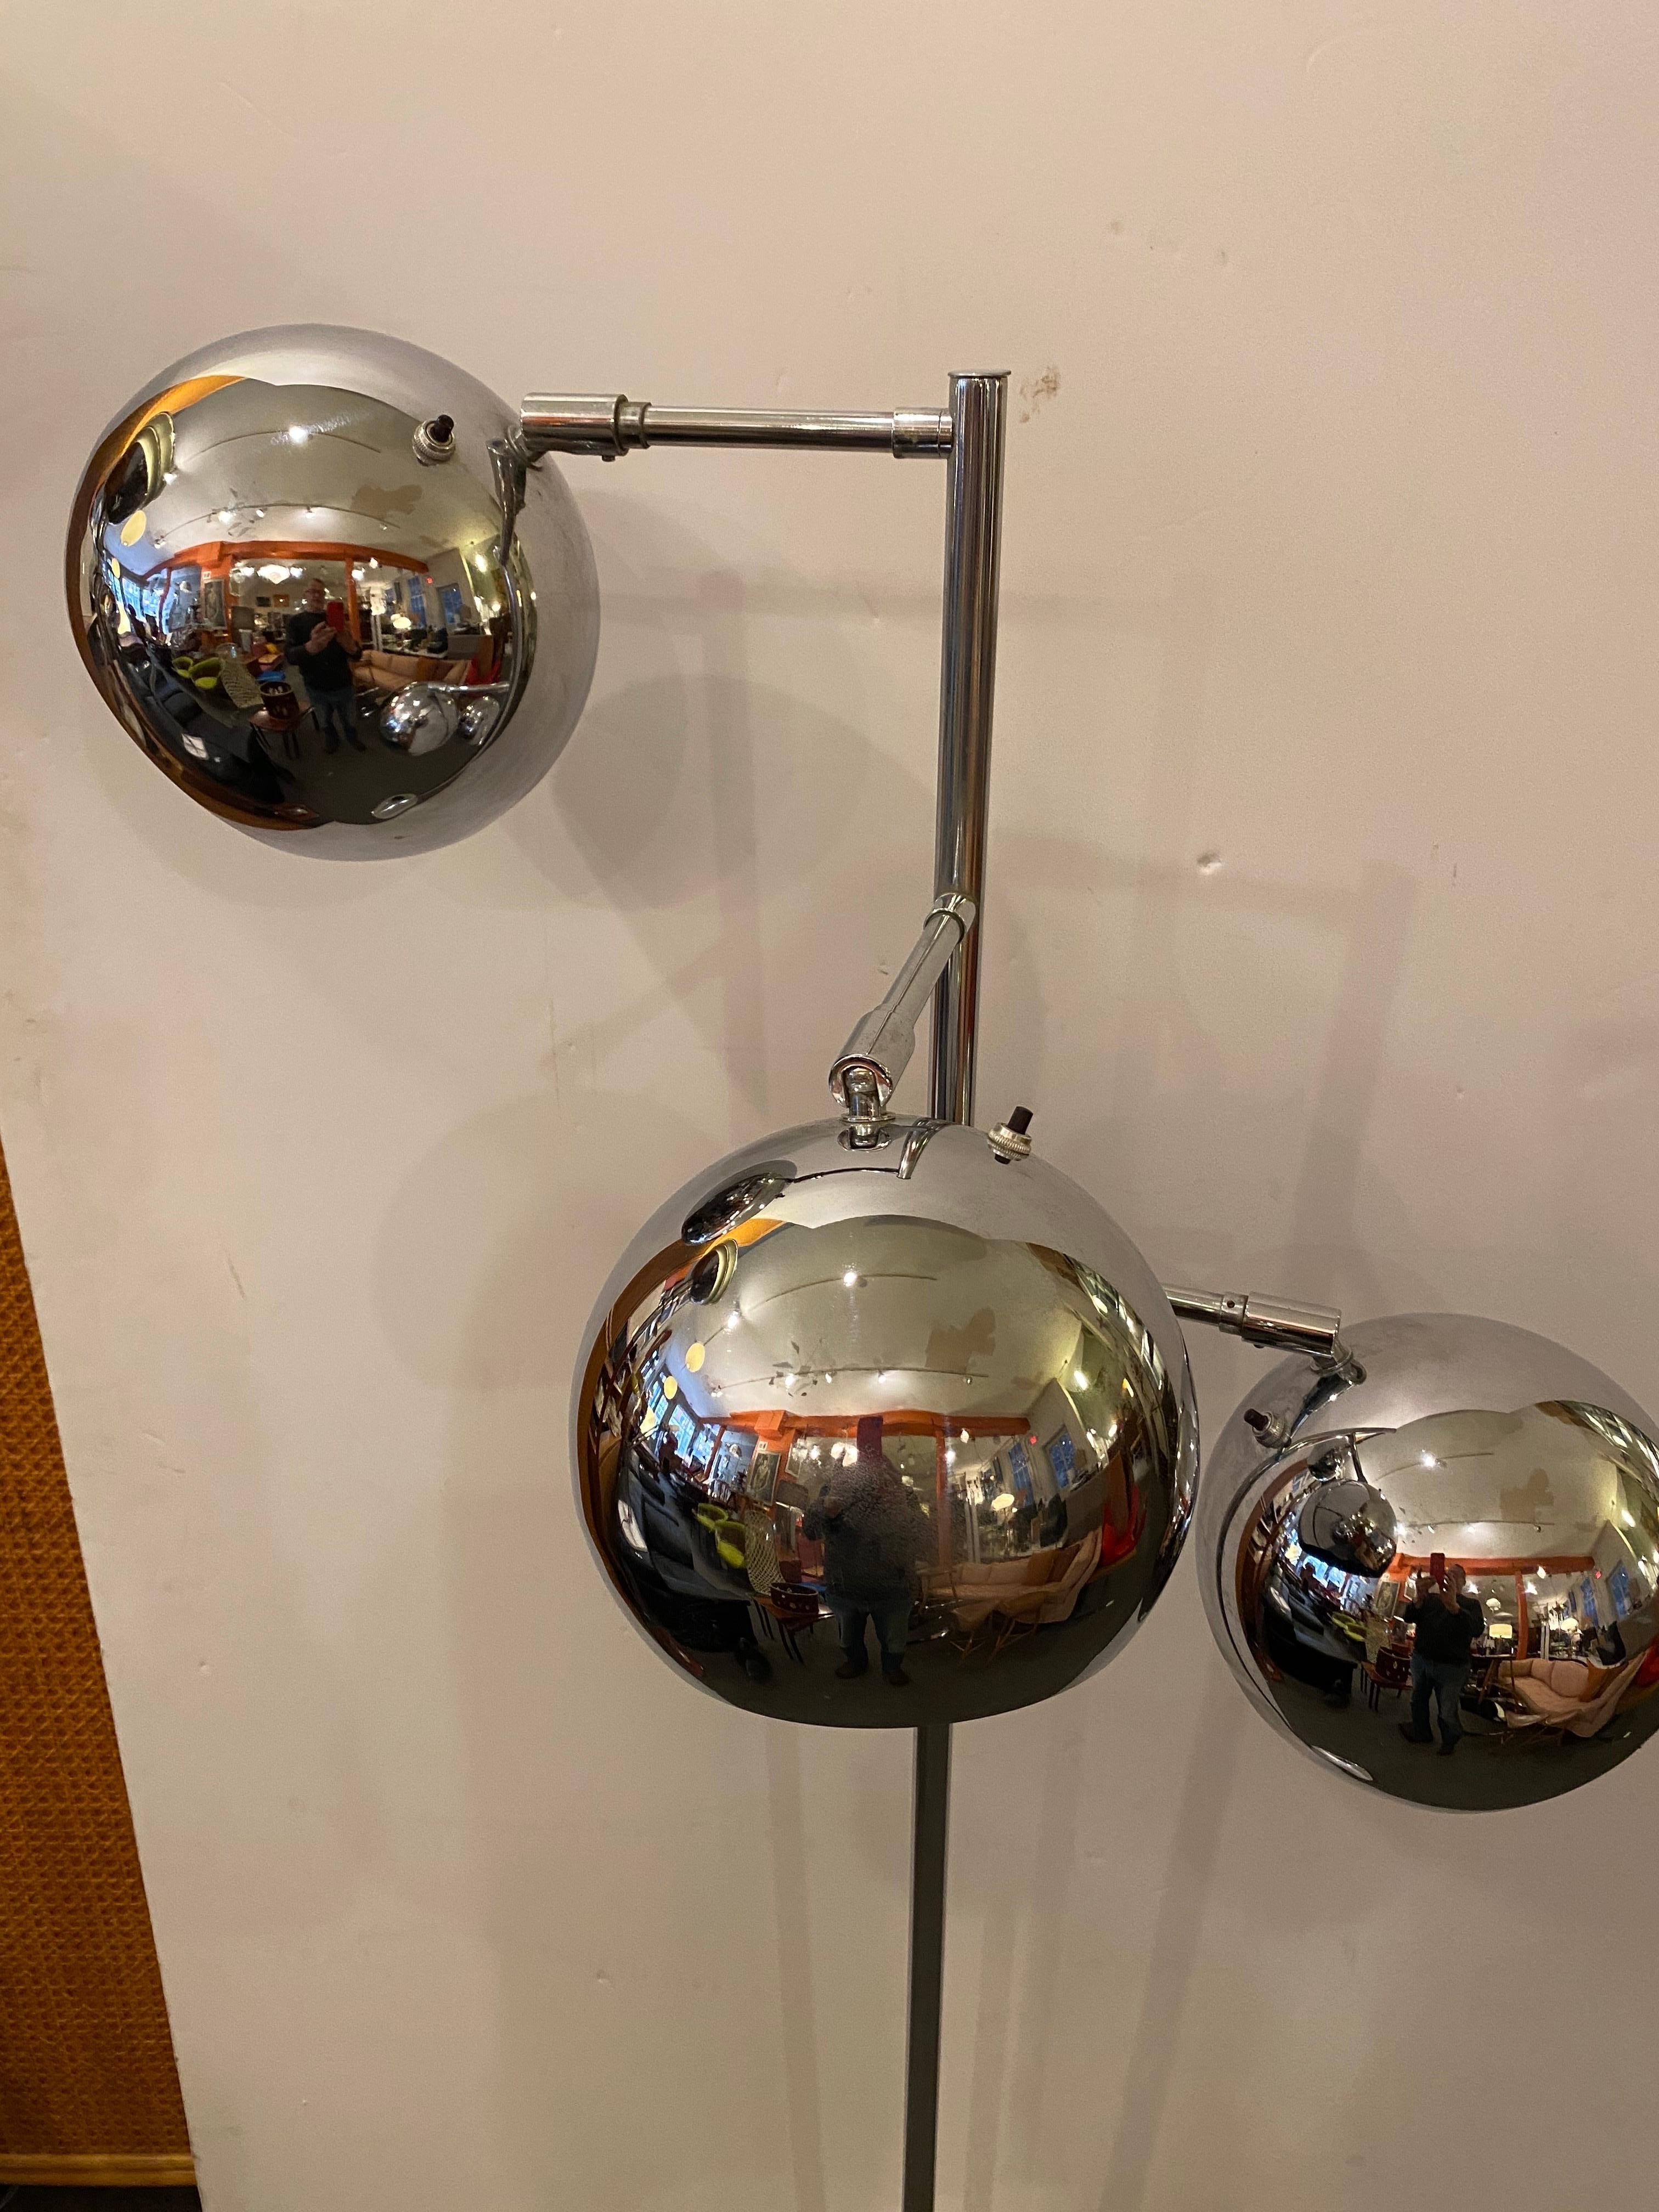 Koch et Lowy Lampadaire chromé à 3 têtes.  Les abat-jour Chrome Ball ont chacun leur propre interrupteur et tournent facilement pour ajuster la direction de la lumière.  Le chrome est très propre !